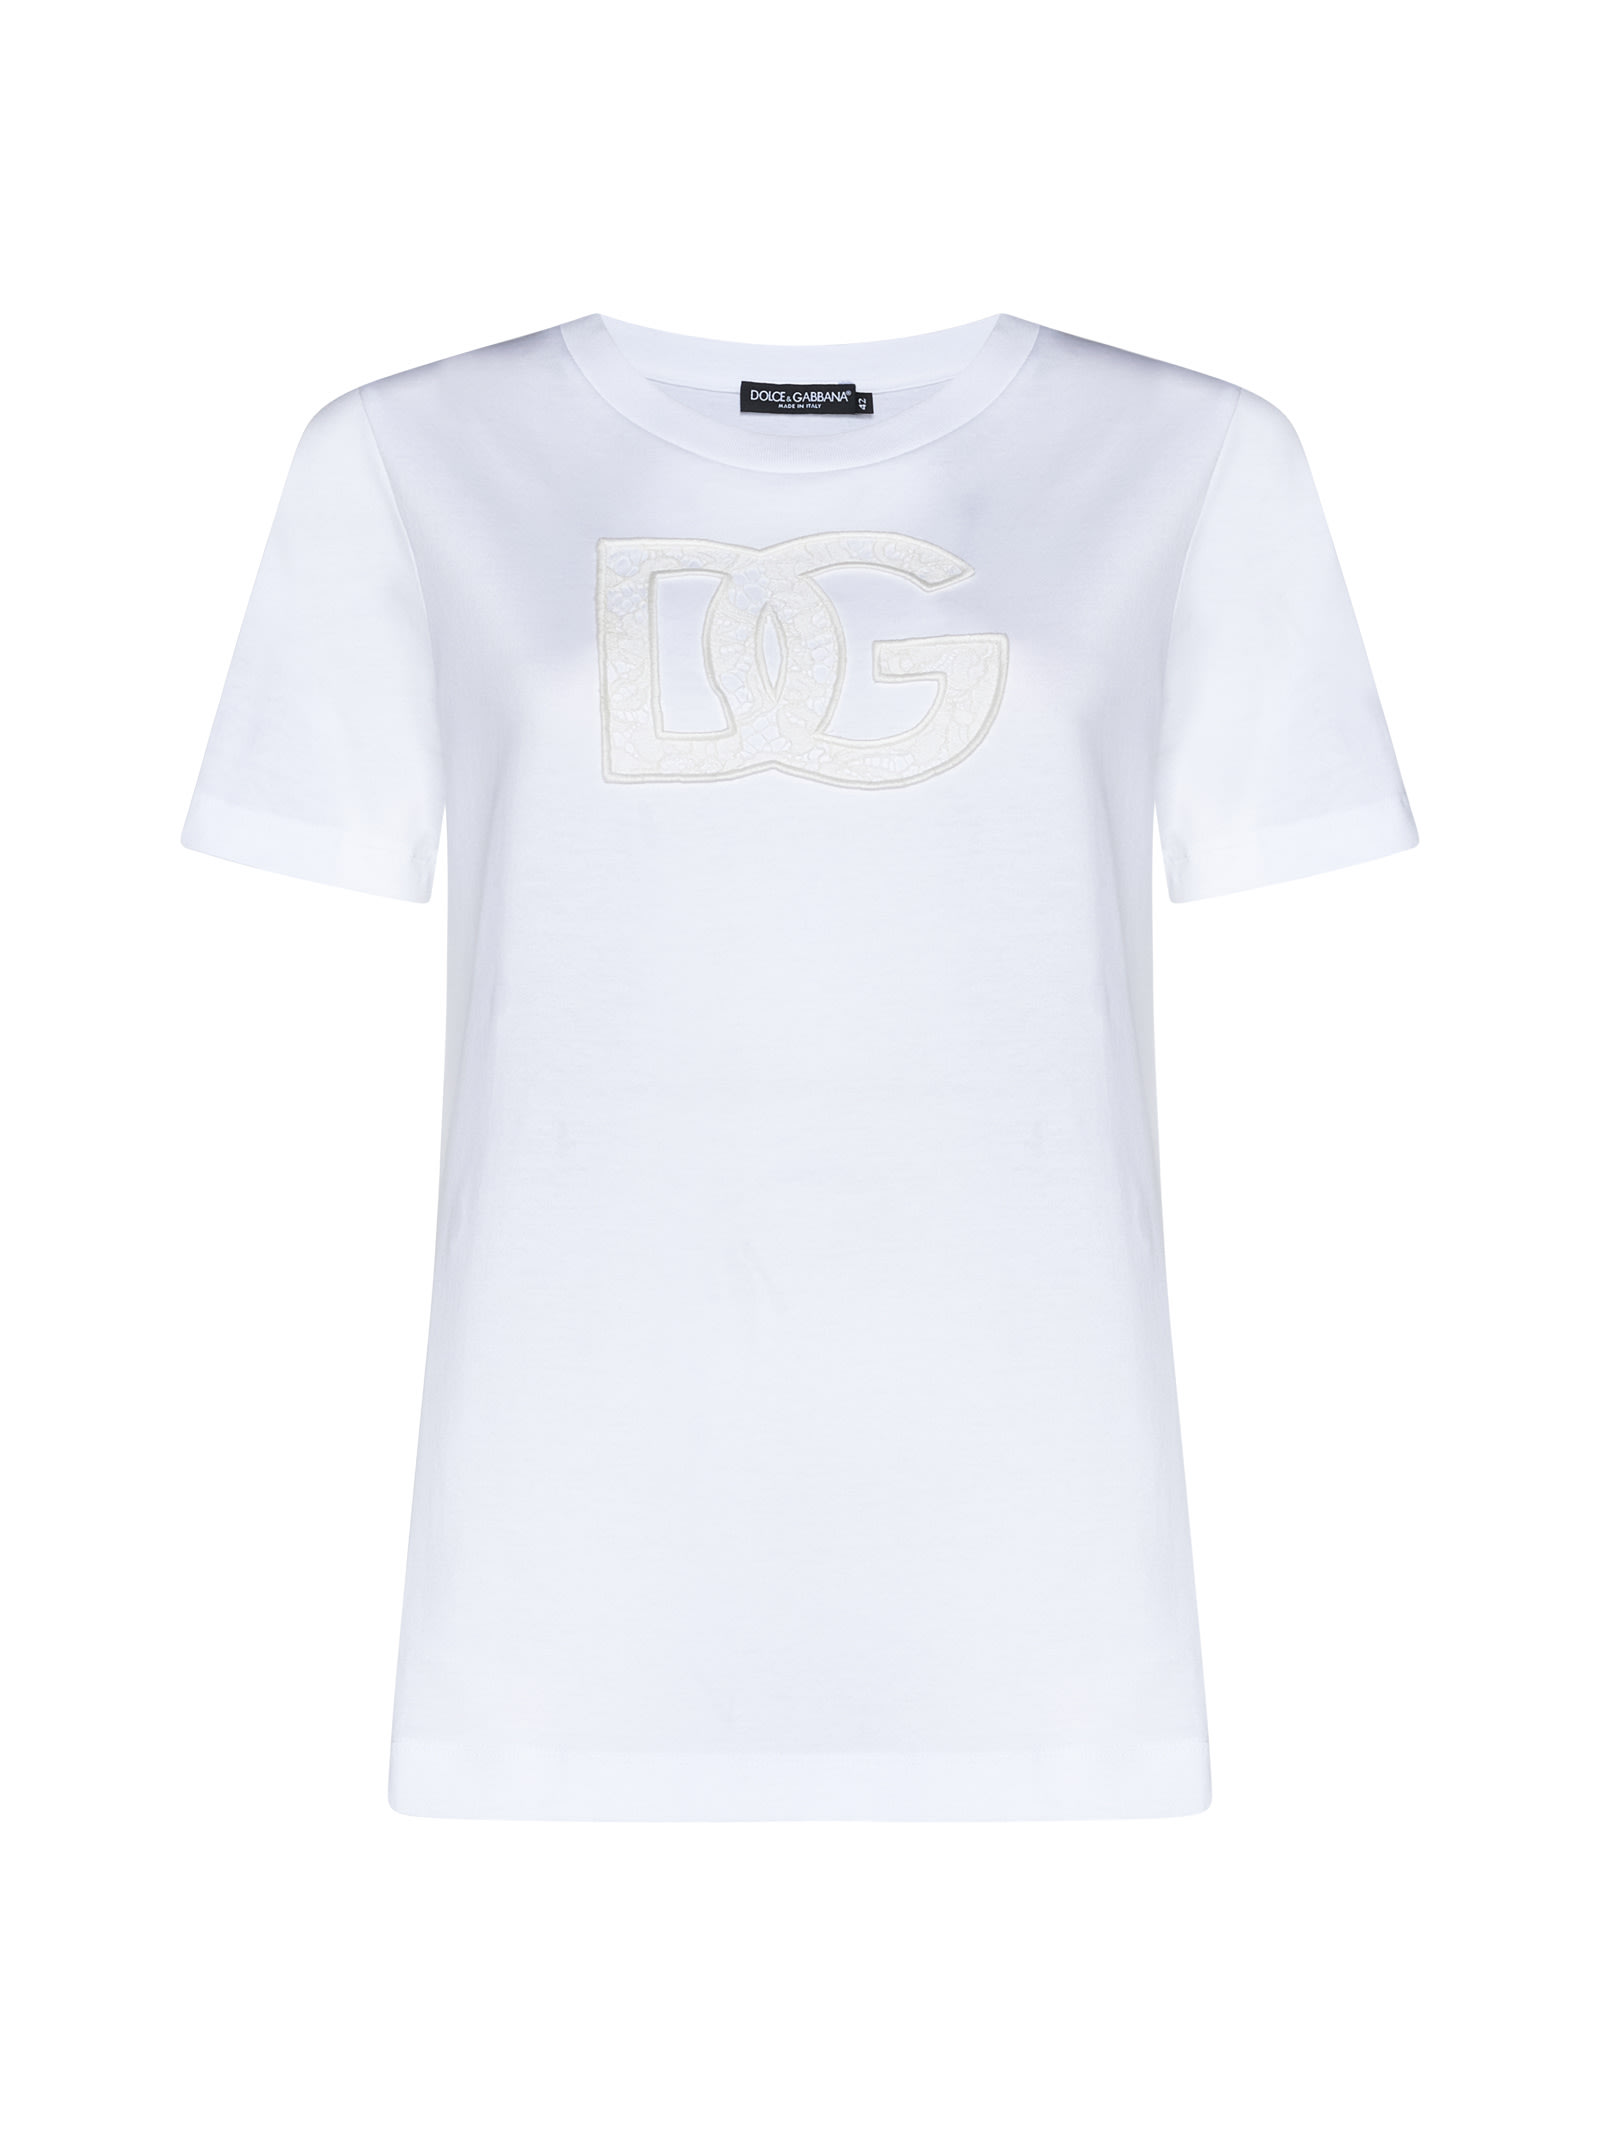 Dolce & Gabbana T-shirt In Animal Print